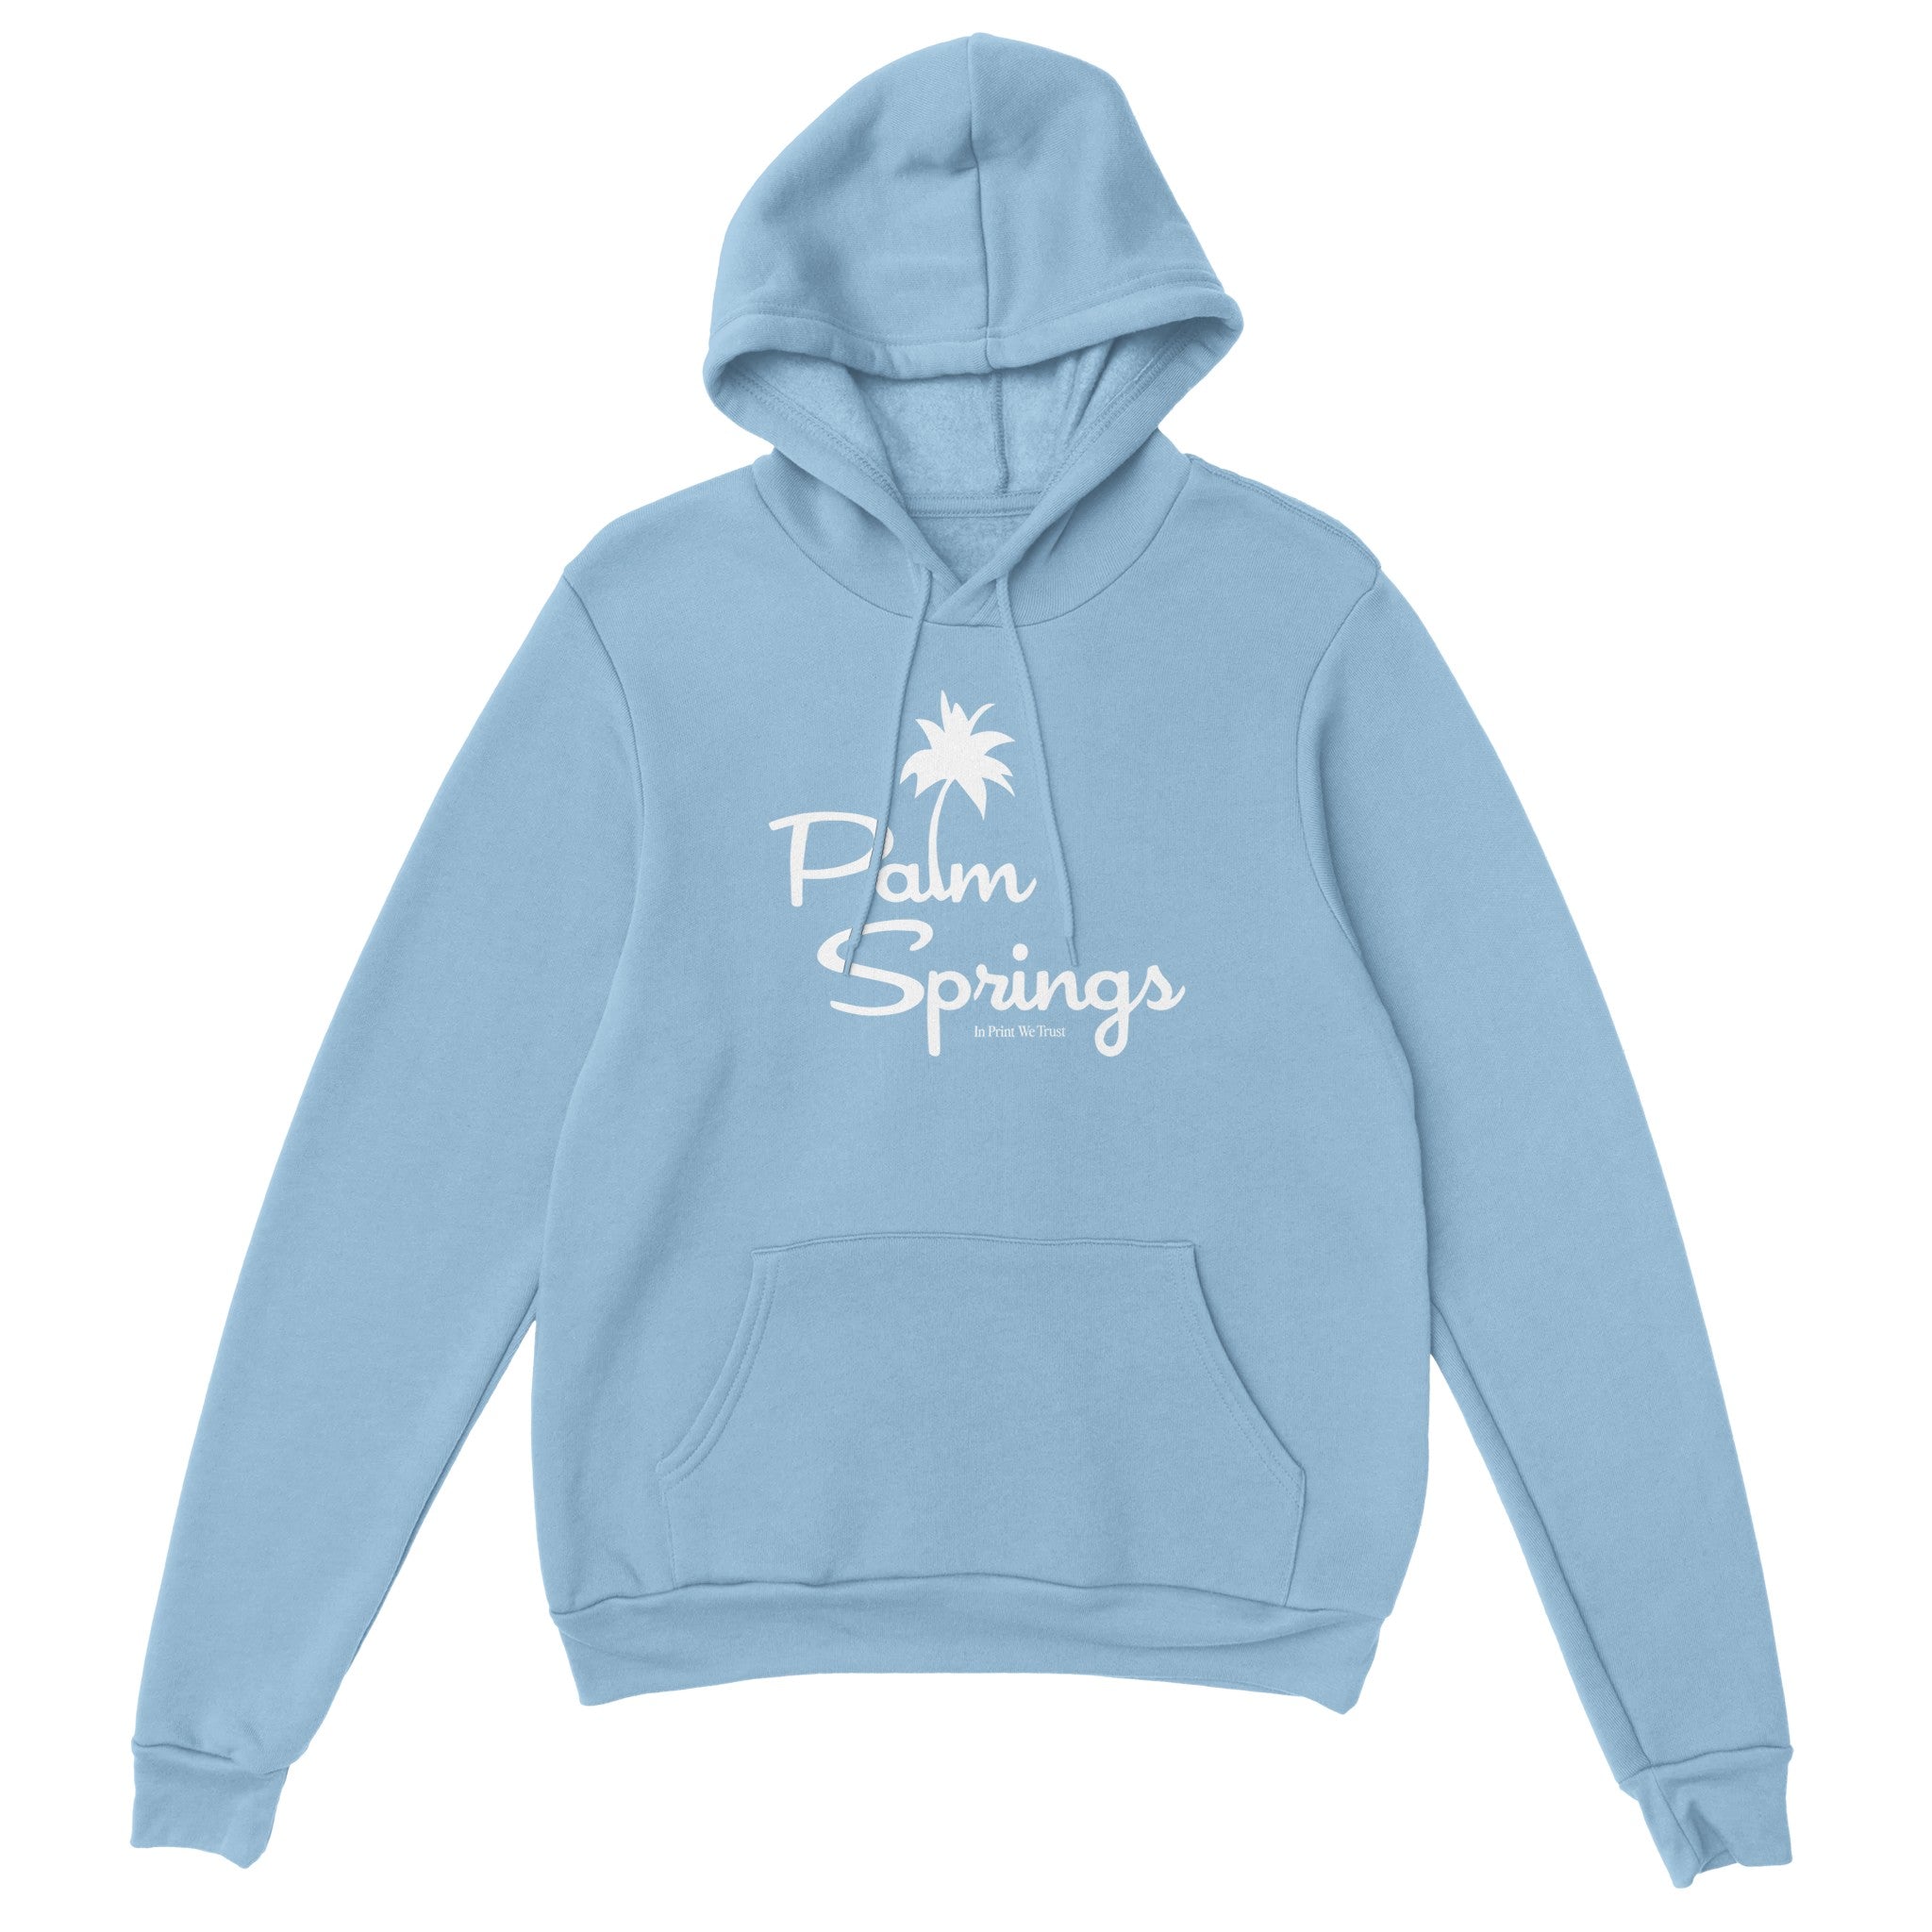 'Palm Springs' hoodie - In Print We Trust